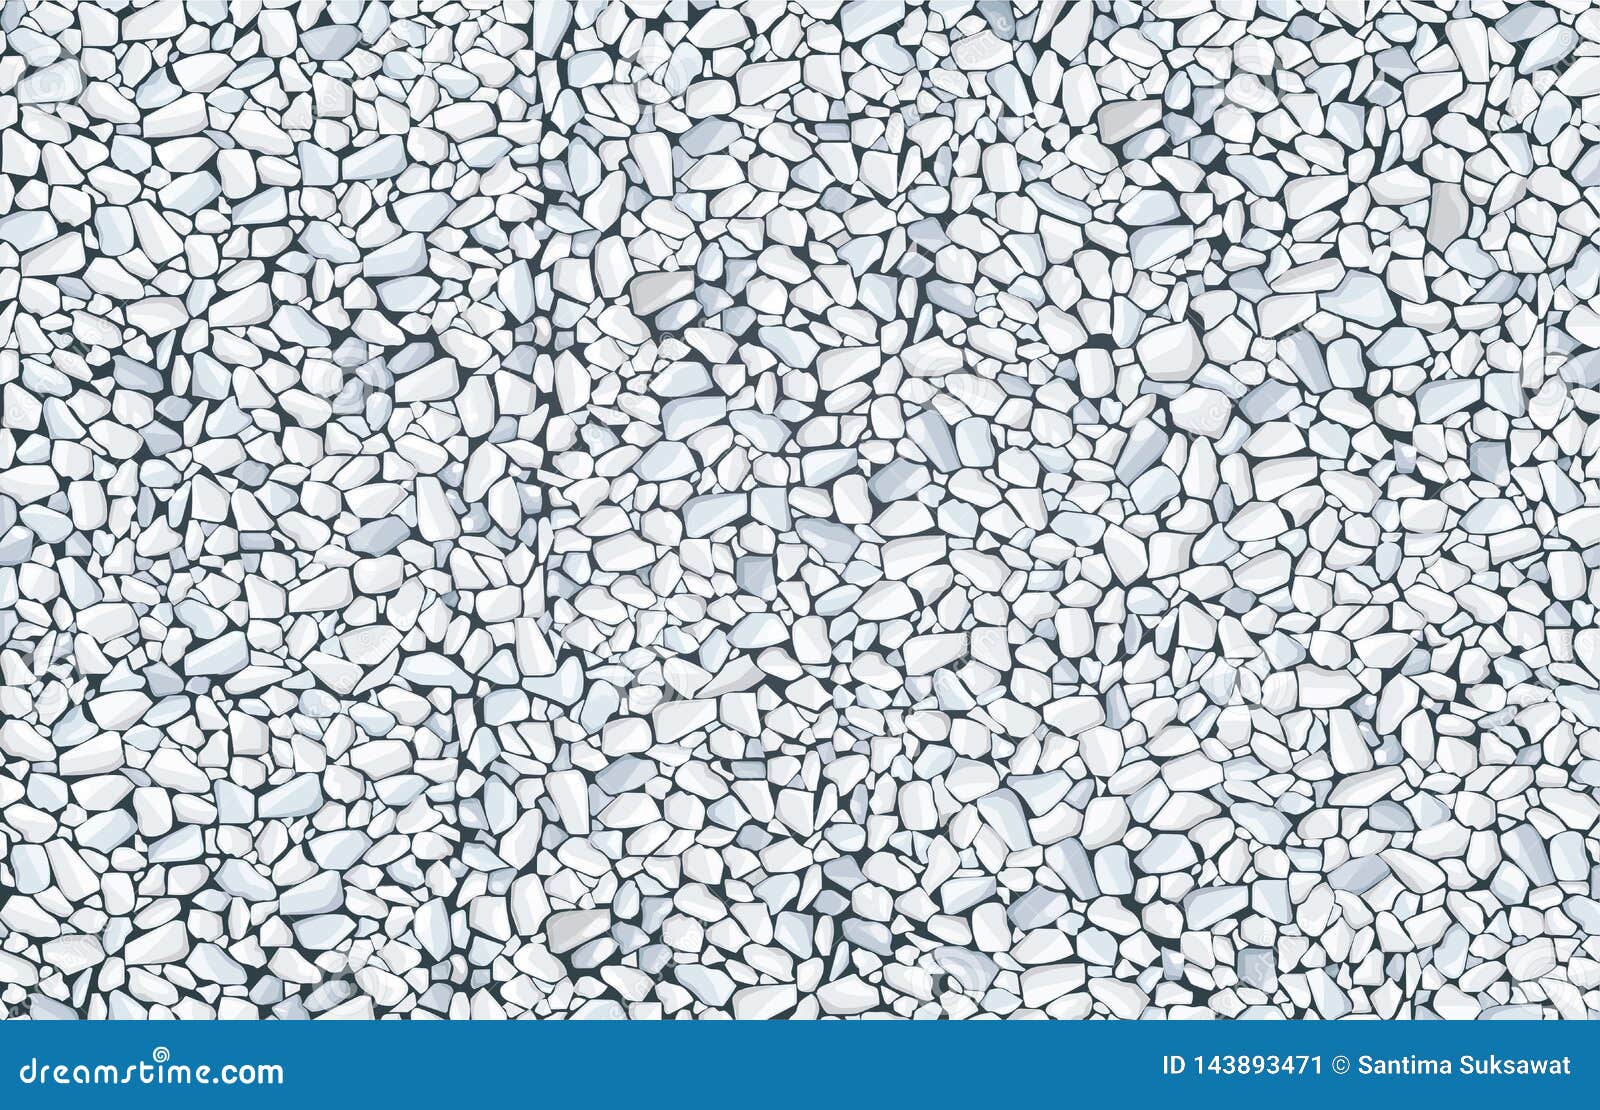 white gravel texture wallpaper.   eps 10